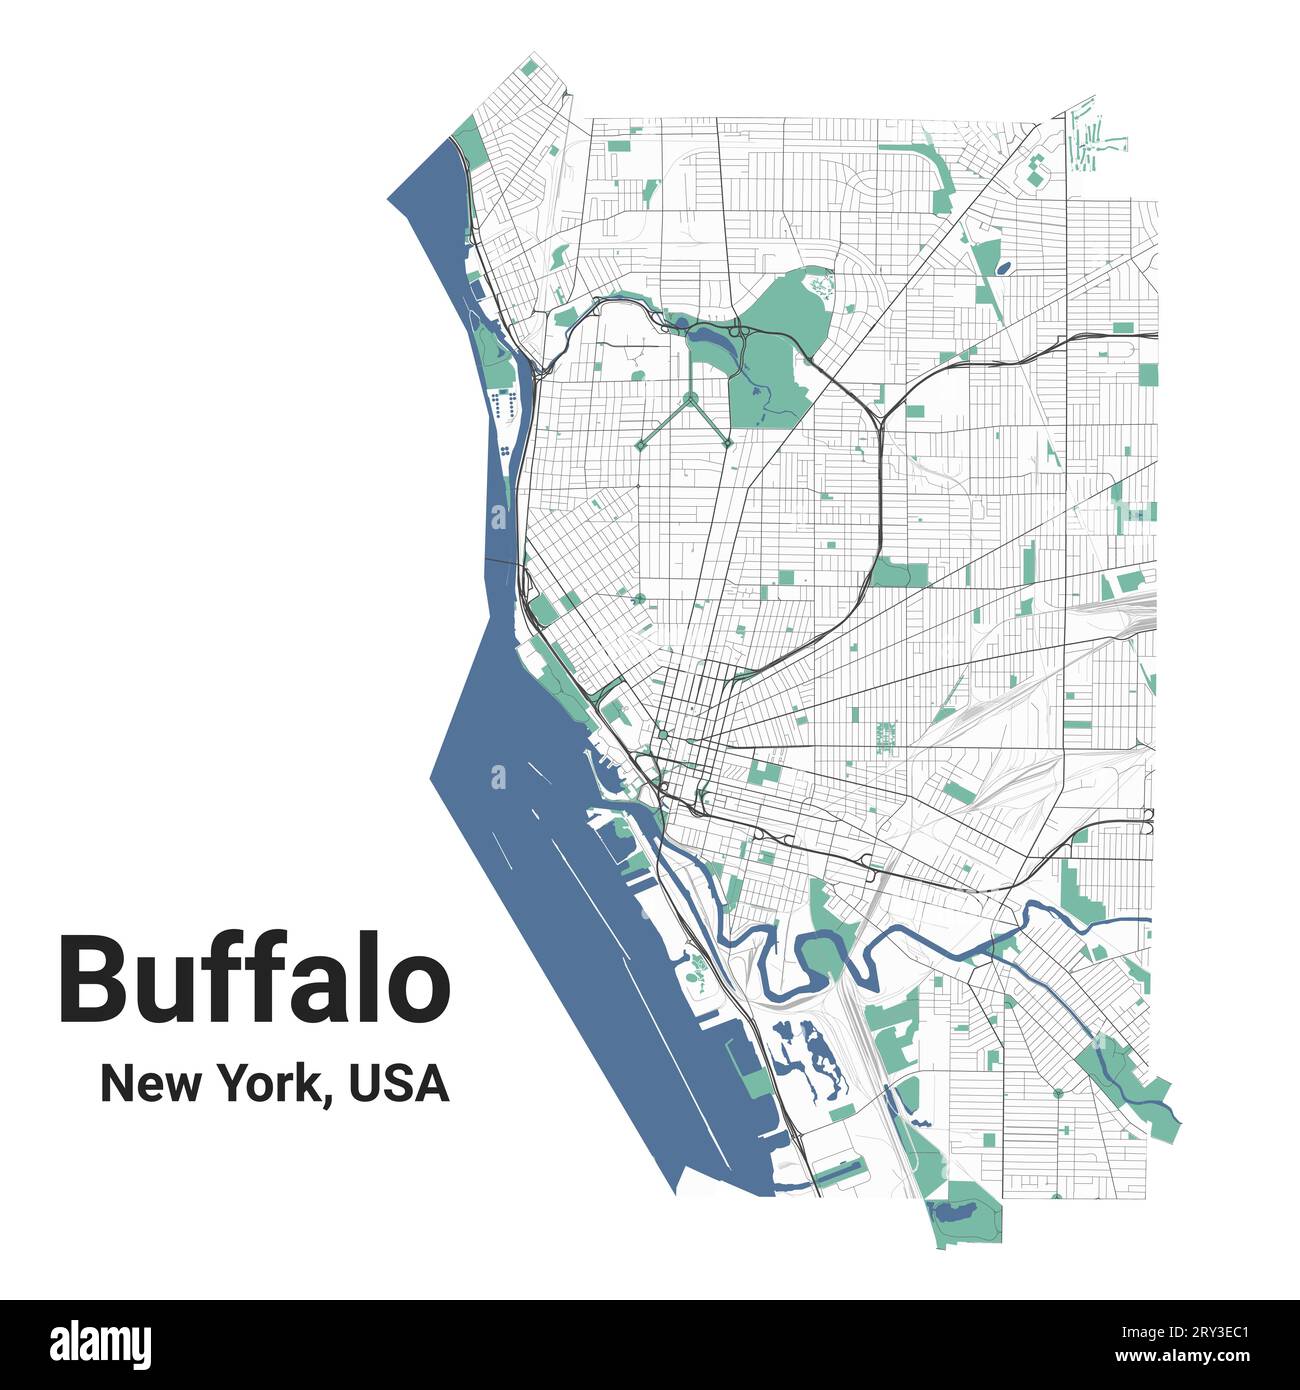 Mappa di Buffalo, New York, città americana. Mappa dell'area amministrativa comunale con fiumi e strade, parchi e ferrovie. Illustrazione vettoriale. Illustrazione Vettoriale